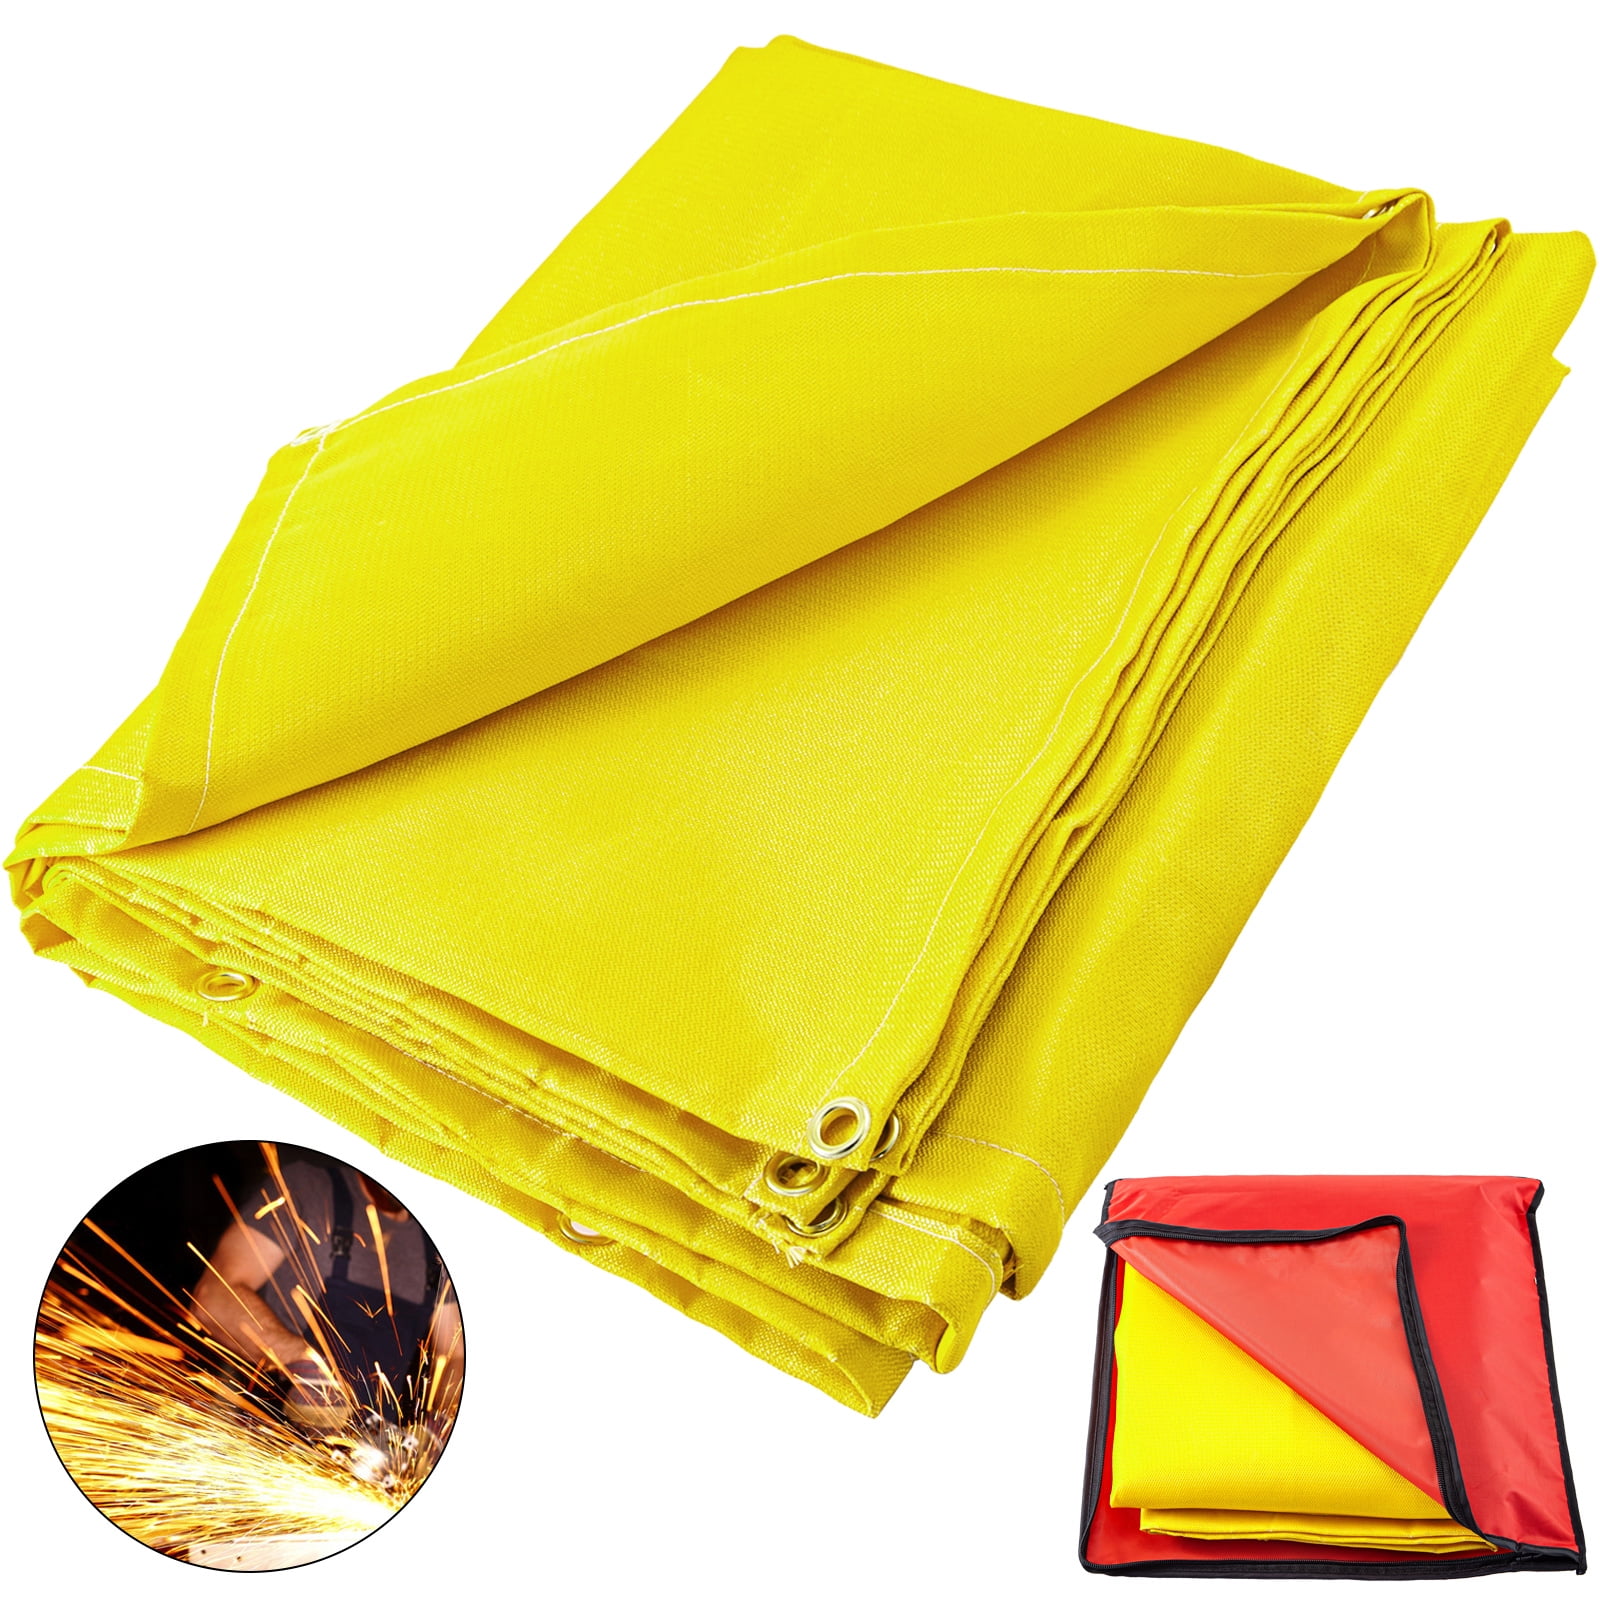 S Fiberglass Heat Fire Resistant Welding Welders Blanket Cover Protective Fabric